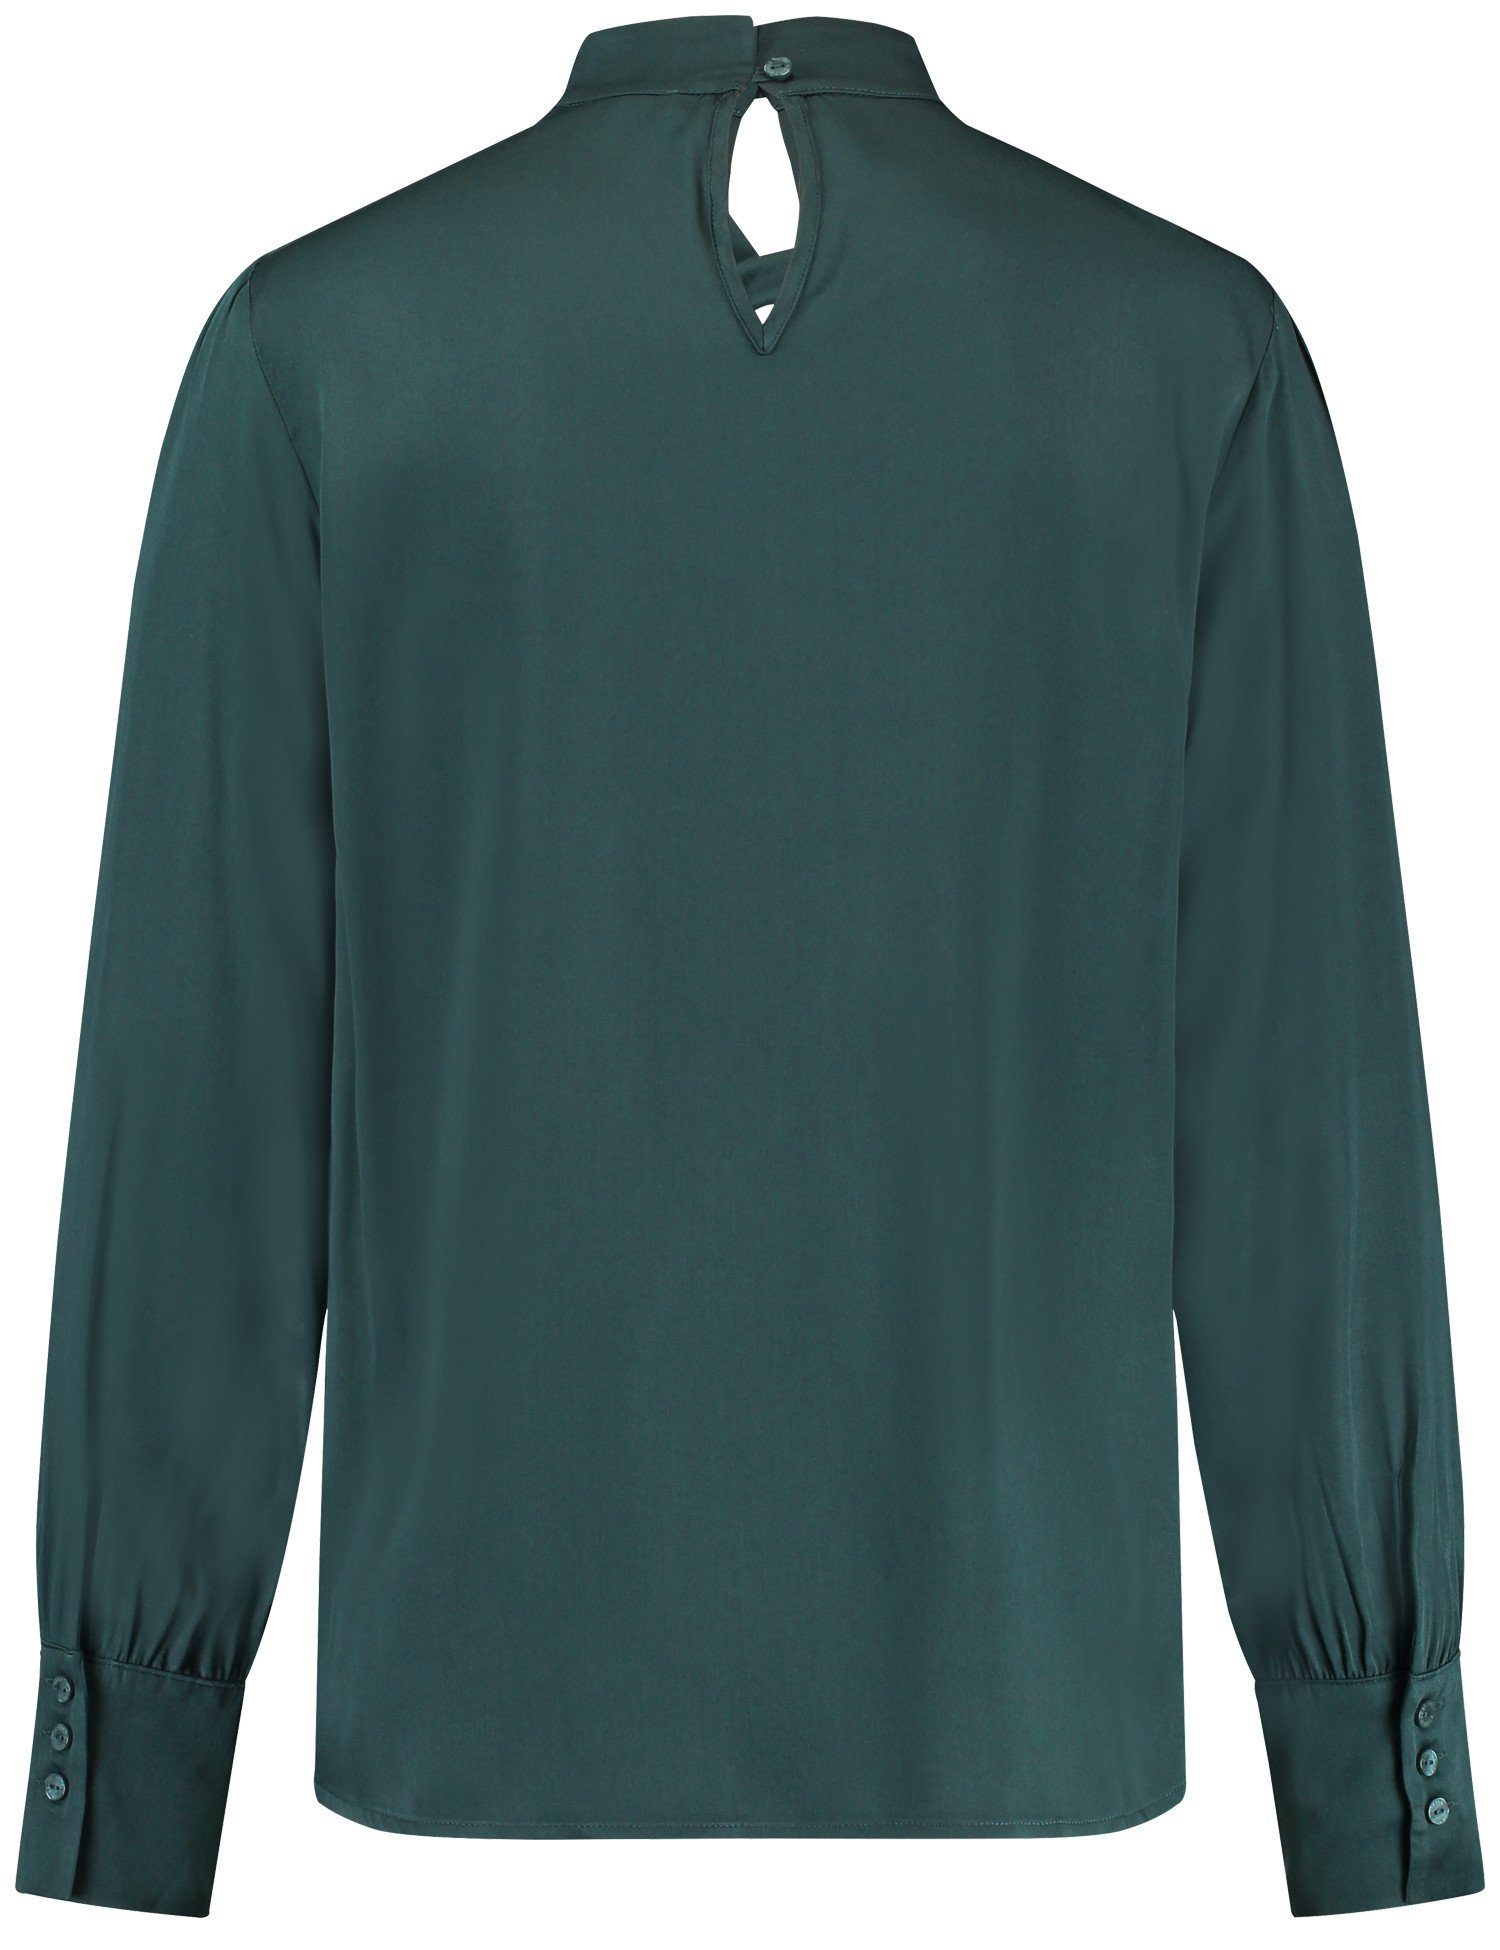 GERRY WEBER Langarmbluse Fließende Bluse Teal dekorativem Green Ausschnitt mit